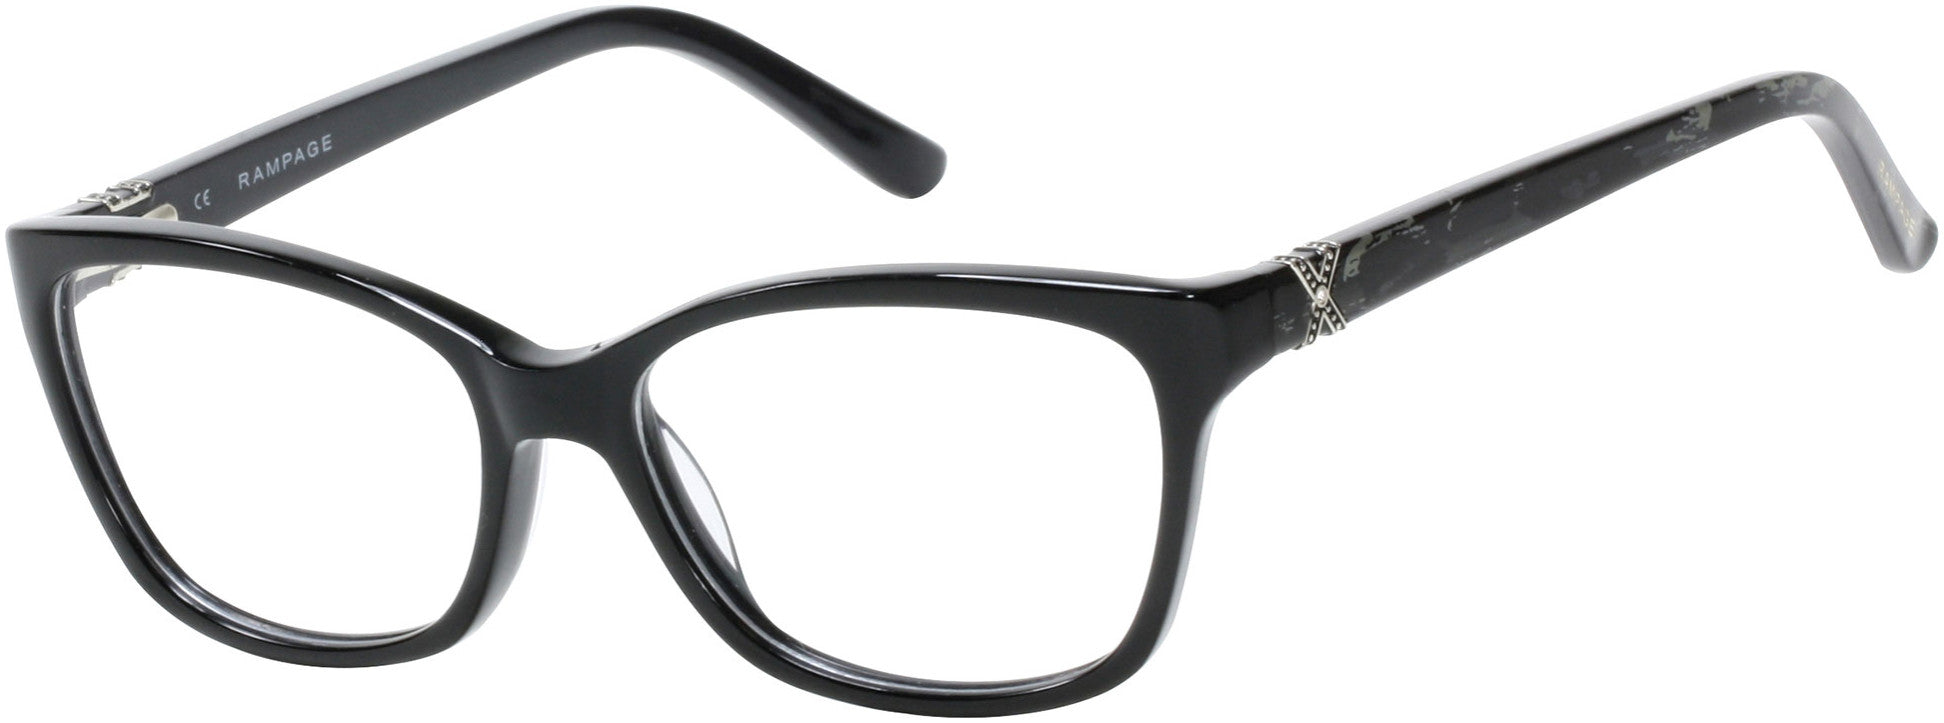 Rampage RA0193 Eyeglasses B84-B84 - Black